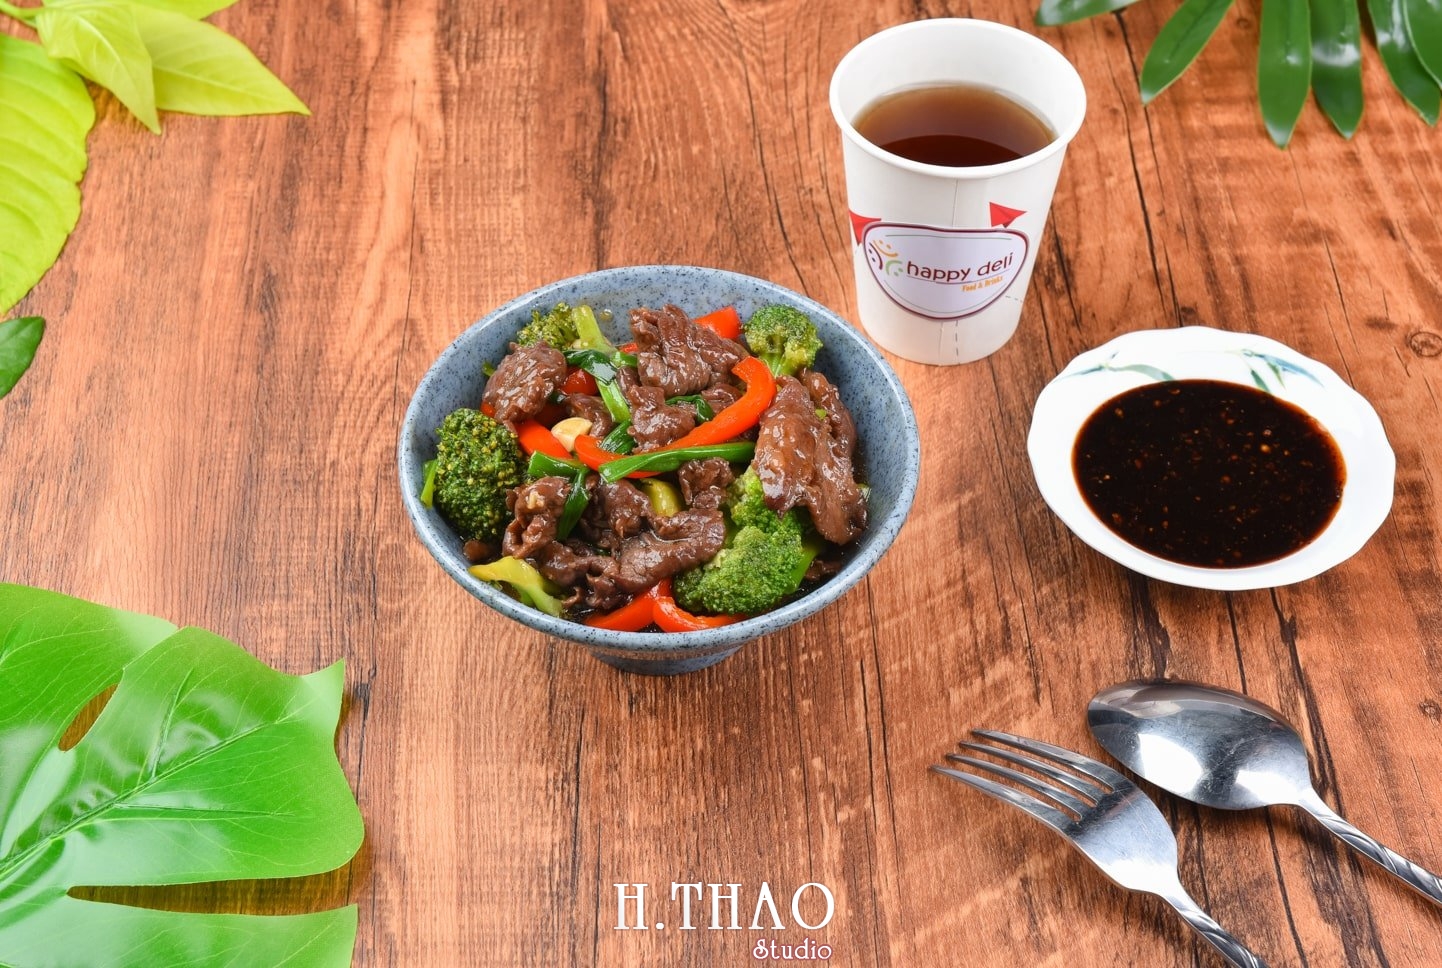 Anh food layout 12 min - Dịch vụ chụp ảnh đồ ăn đẹp, giá rẻ tại TpHCM - HThao Studio